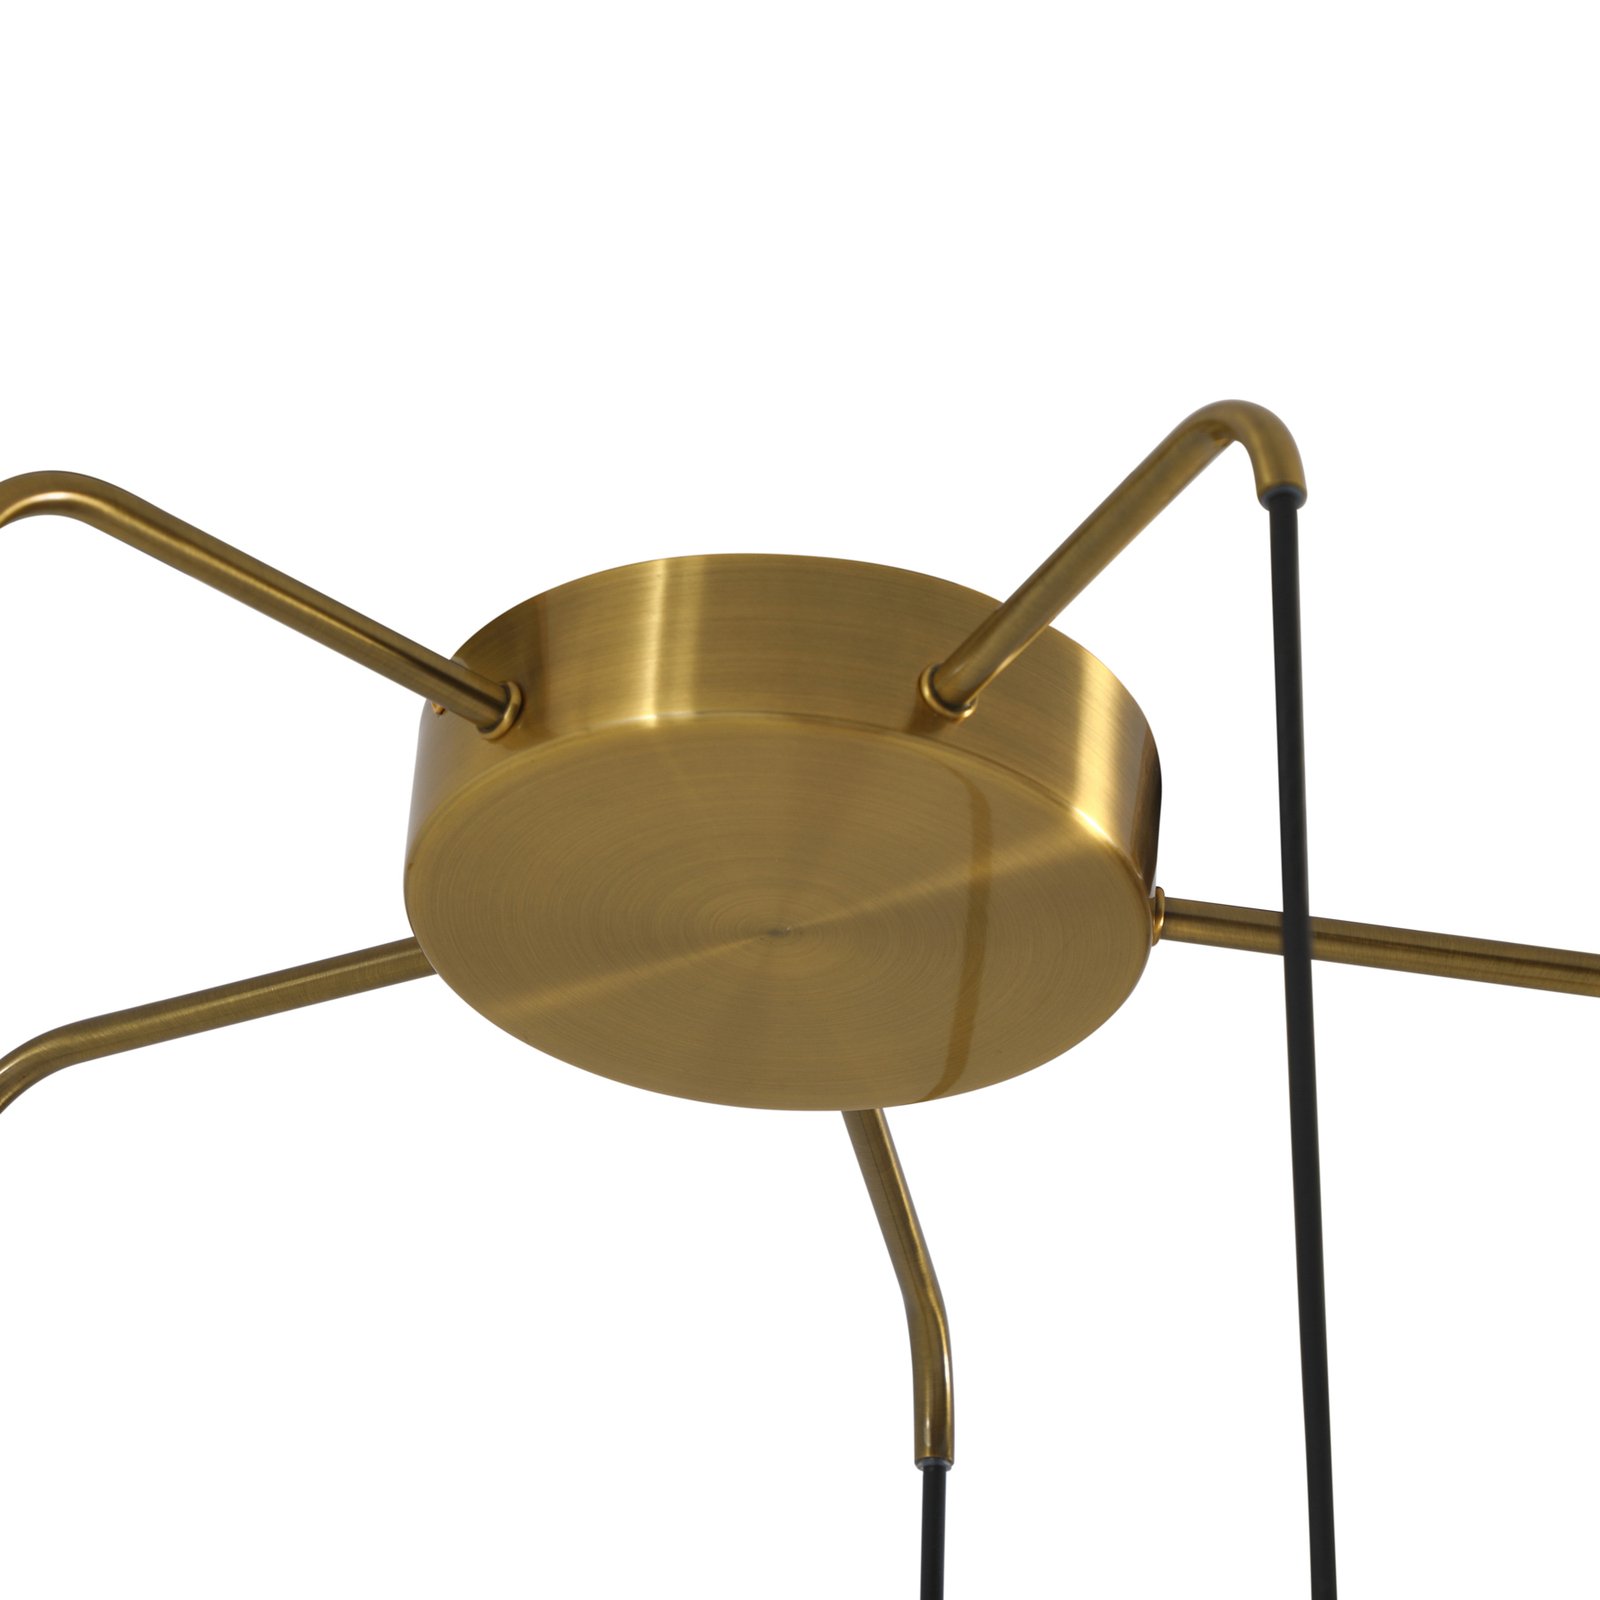 Lindby Belarion hanglamp meerkleurig 6-lamps